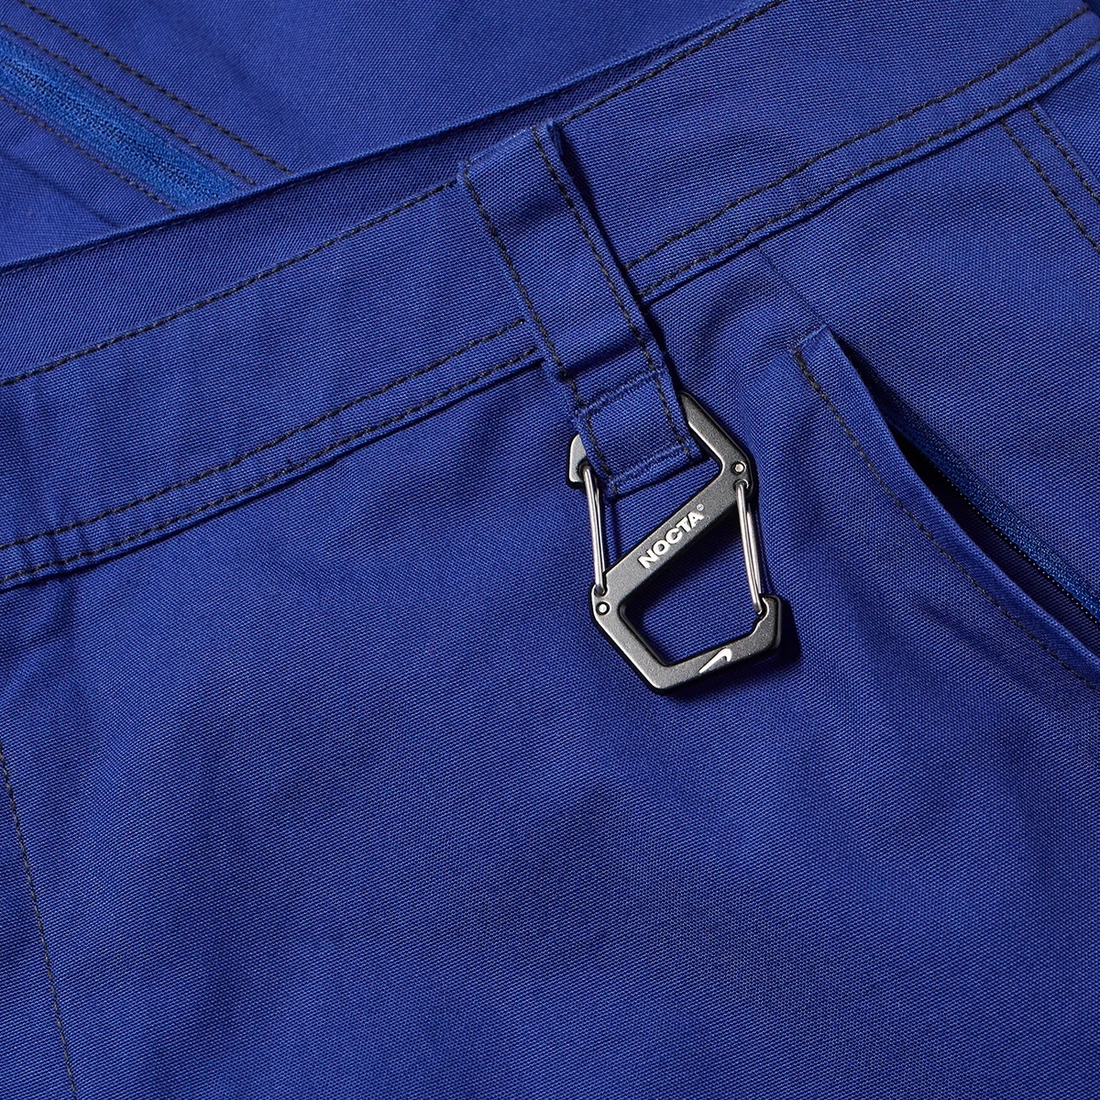 카 아르 데 로또모빌 x 녹타 x 나이키 팬츠 딥 로얄 블루 FD6510-455